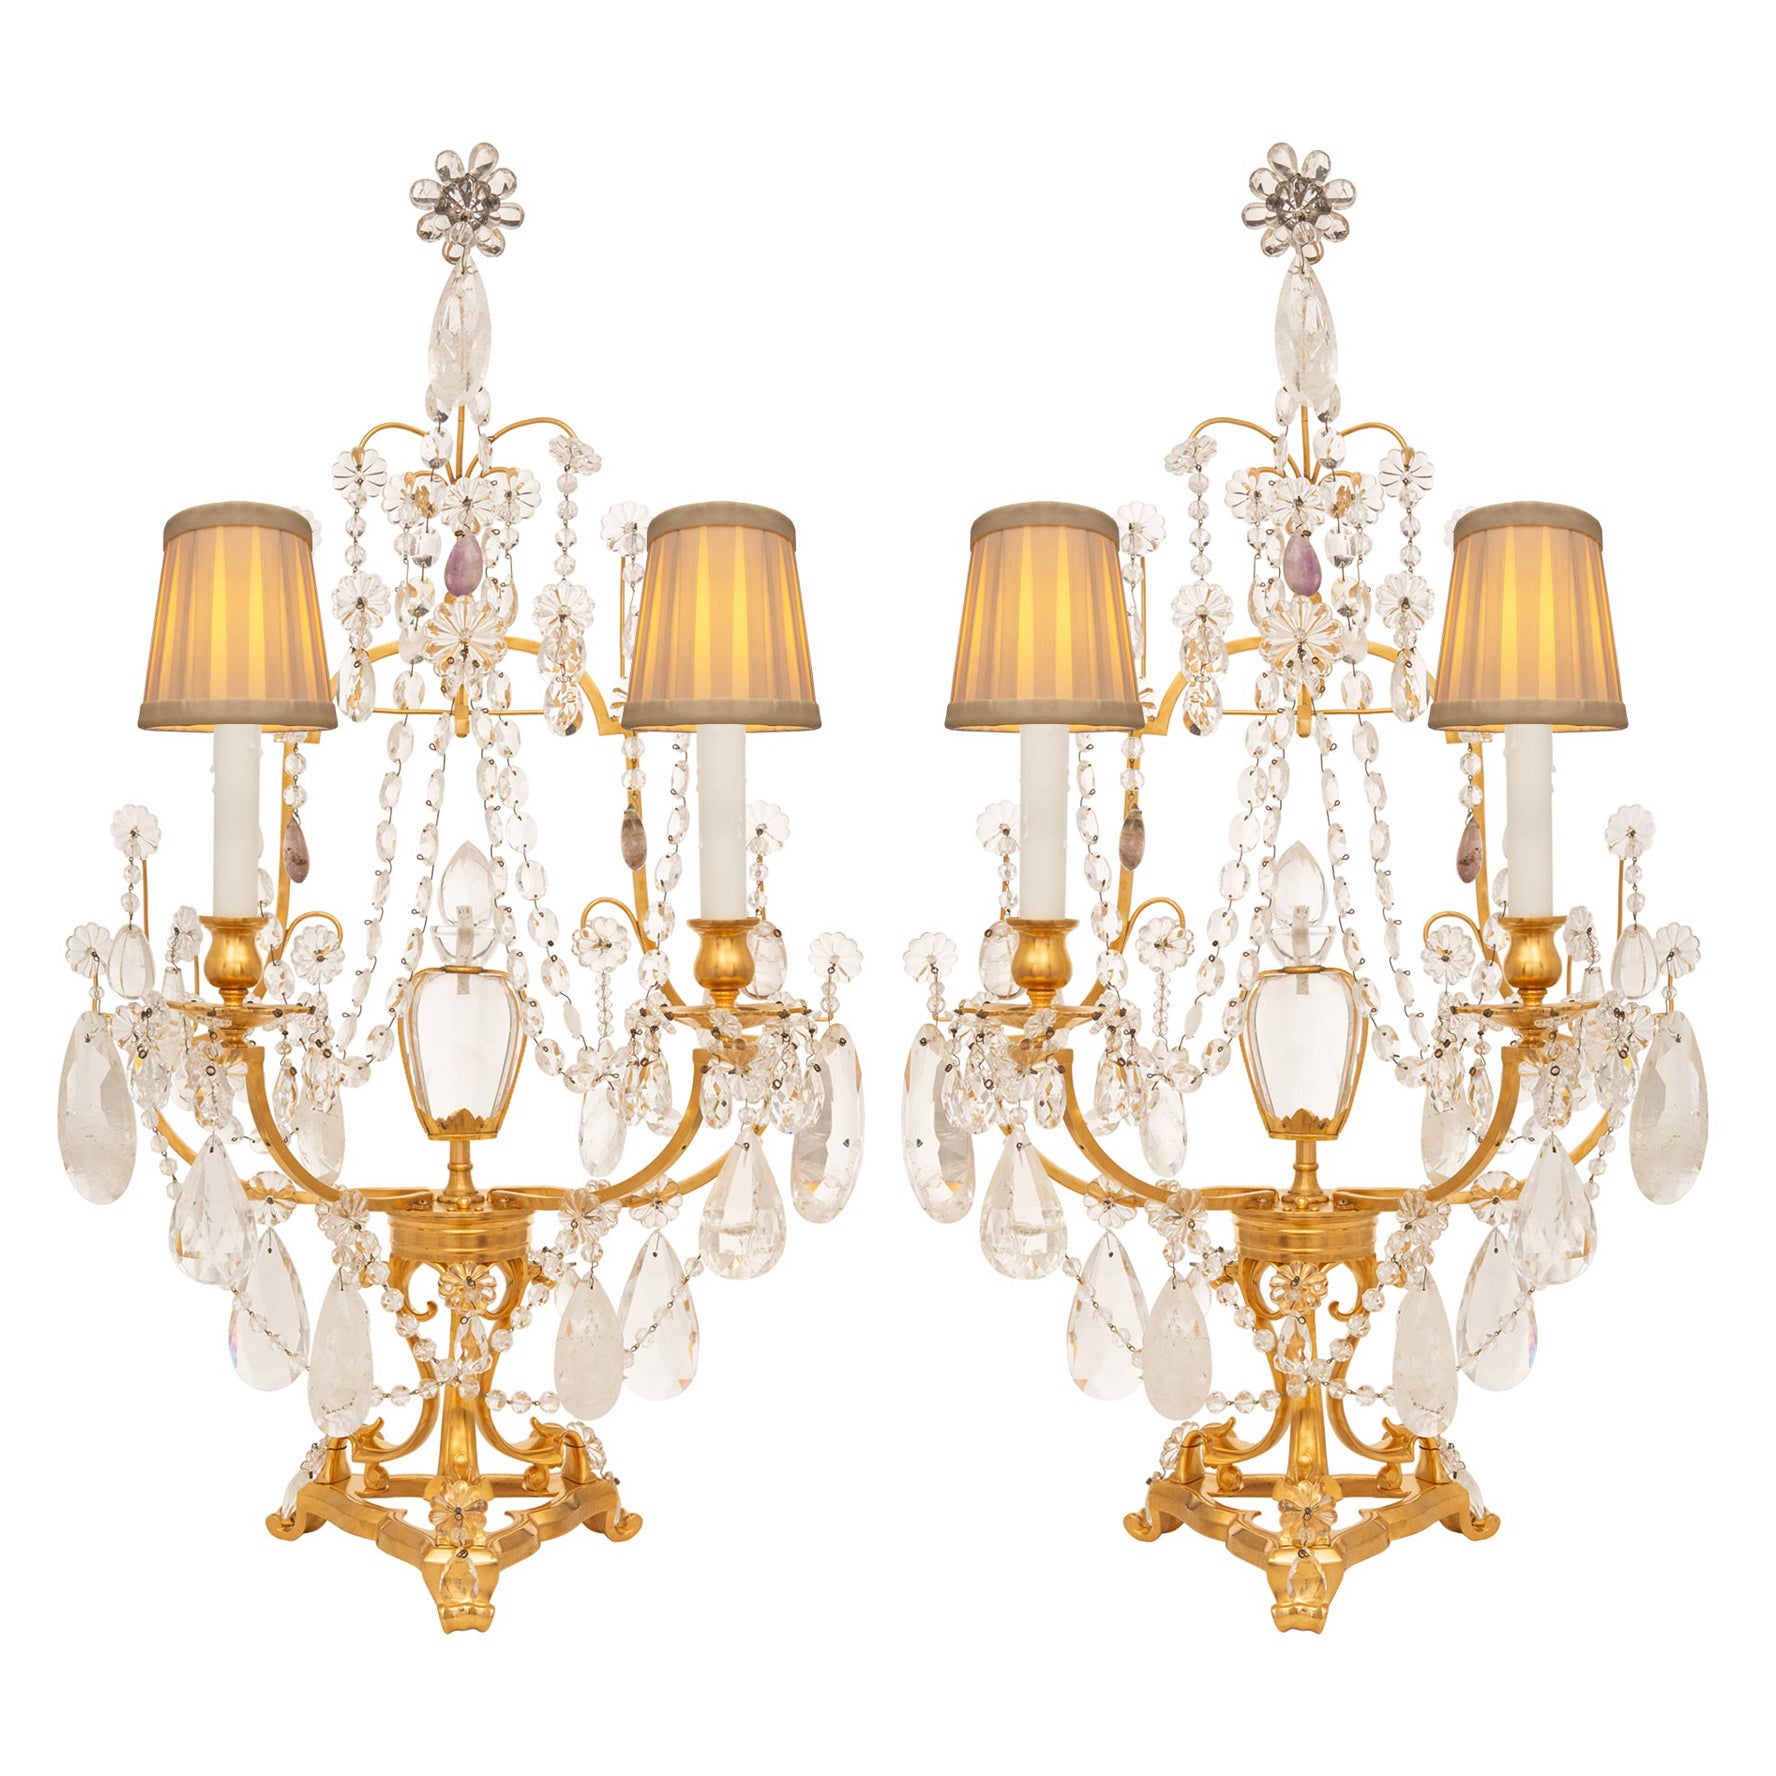 Paire de lampes Girondoles en cristal de roche et bronze doré de style Louis XVI du XIXe siècle